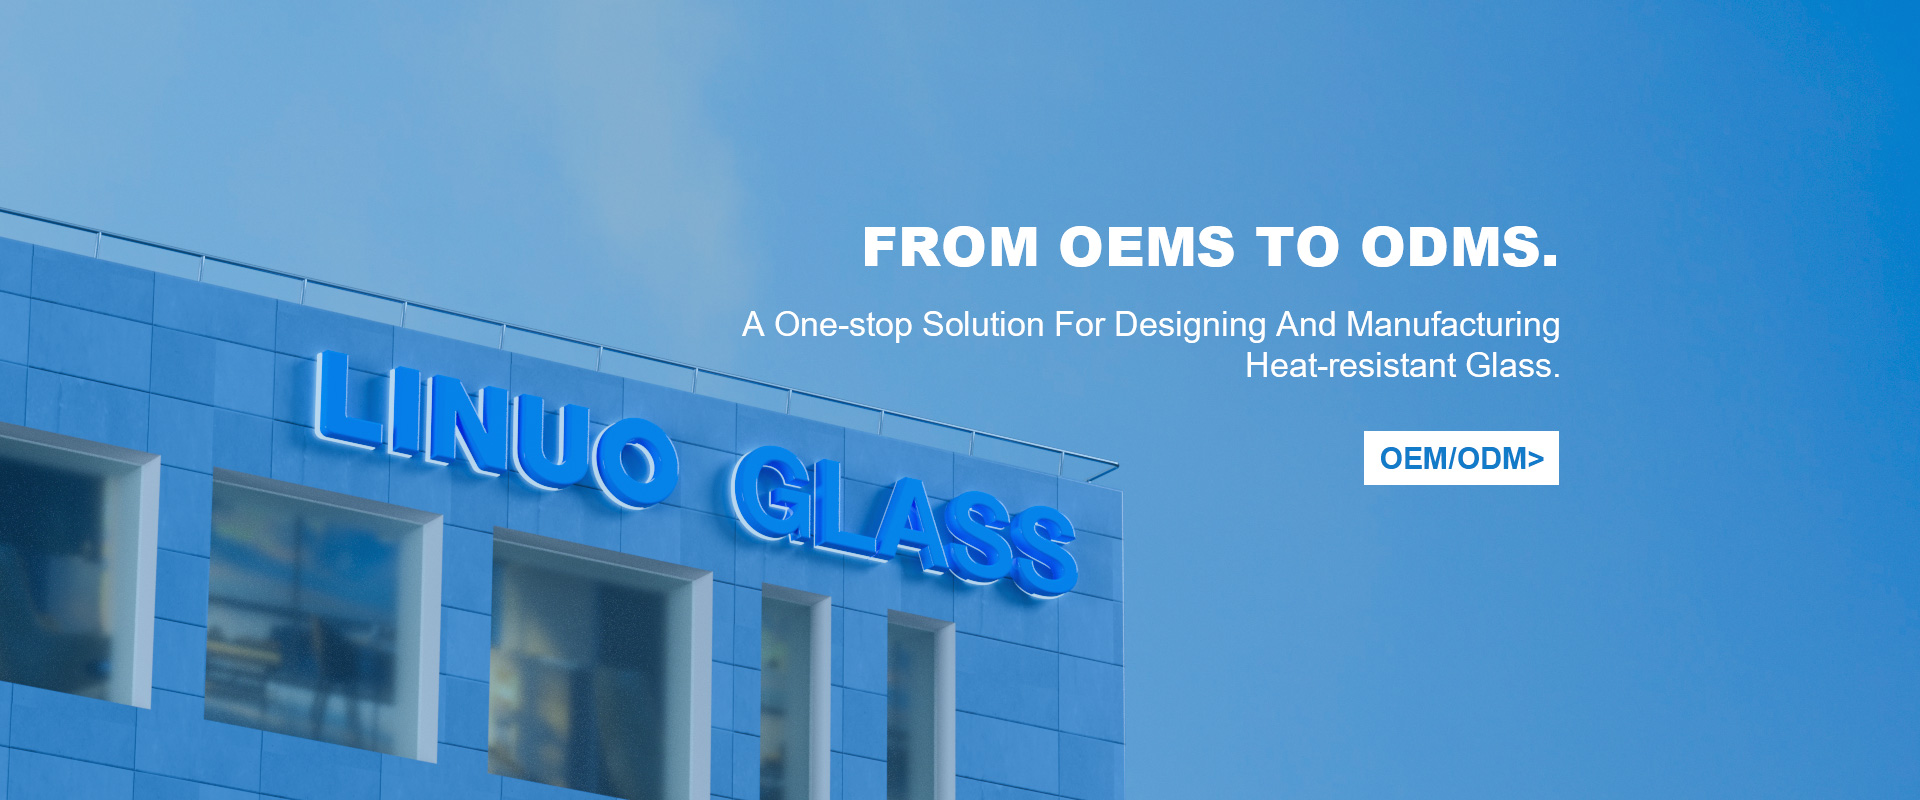 Une solution unique pour la conception et la fabrication de verre résistant à la chaleur.